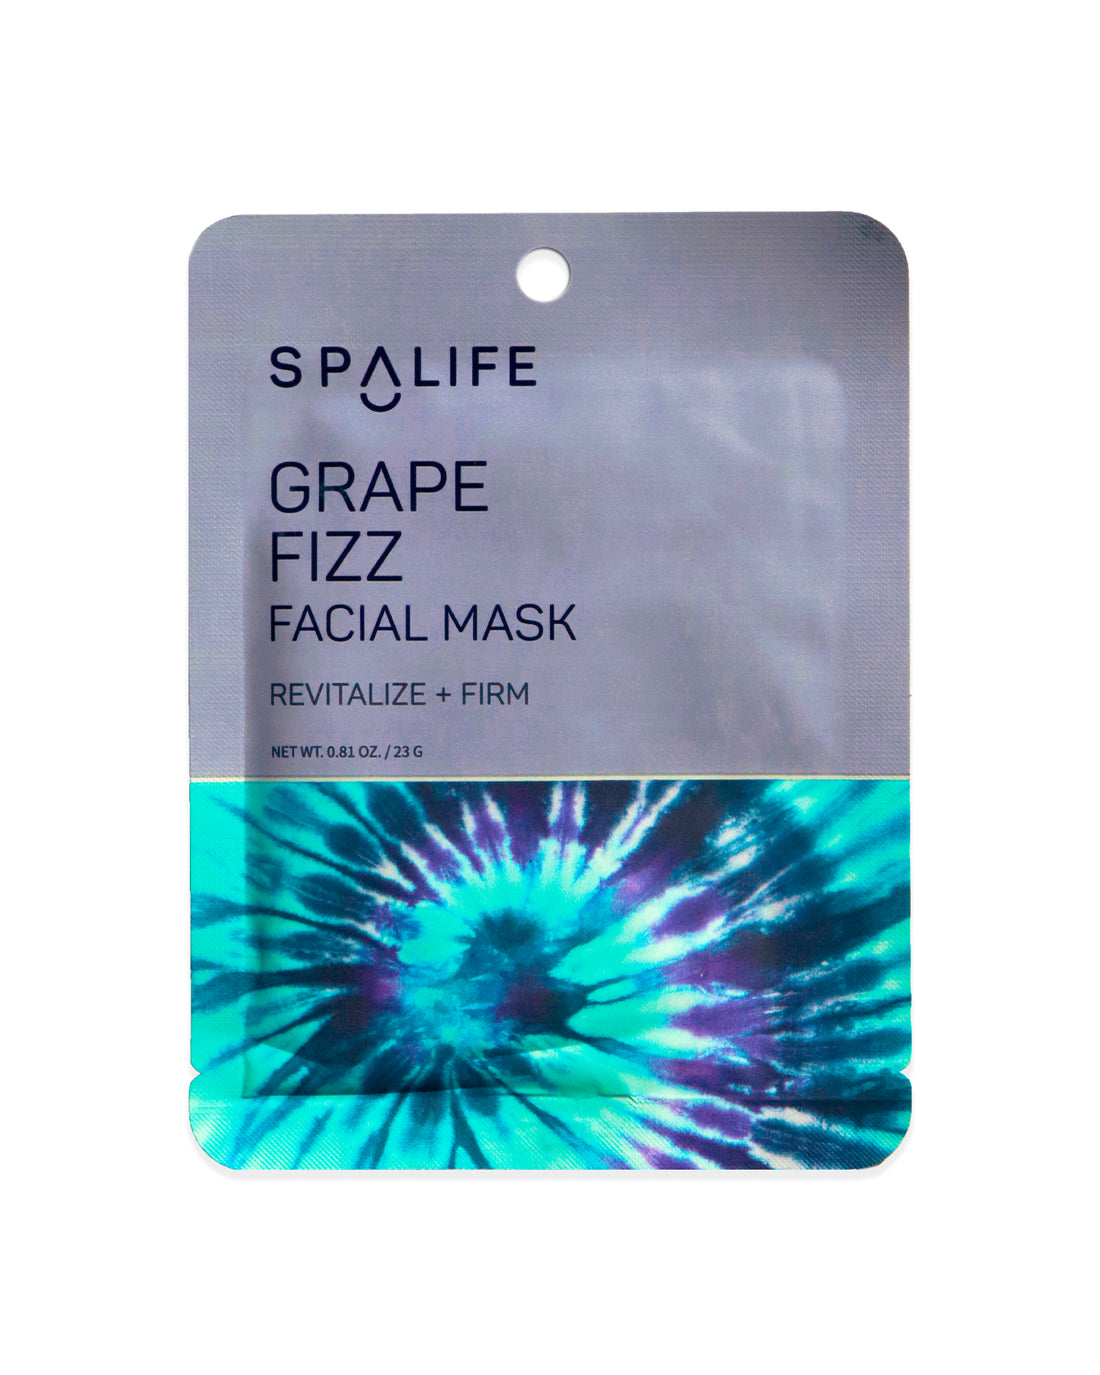 Grape_fizz_facial_mask_packet-585